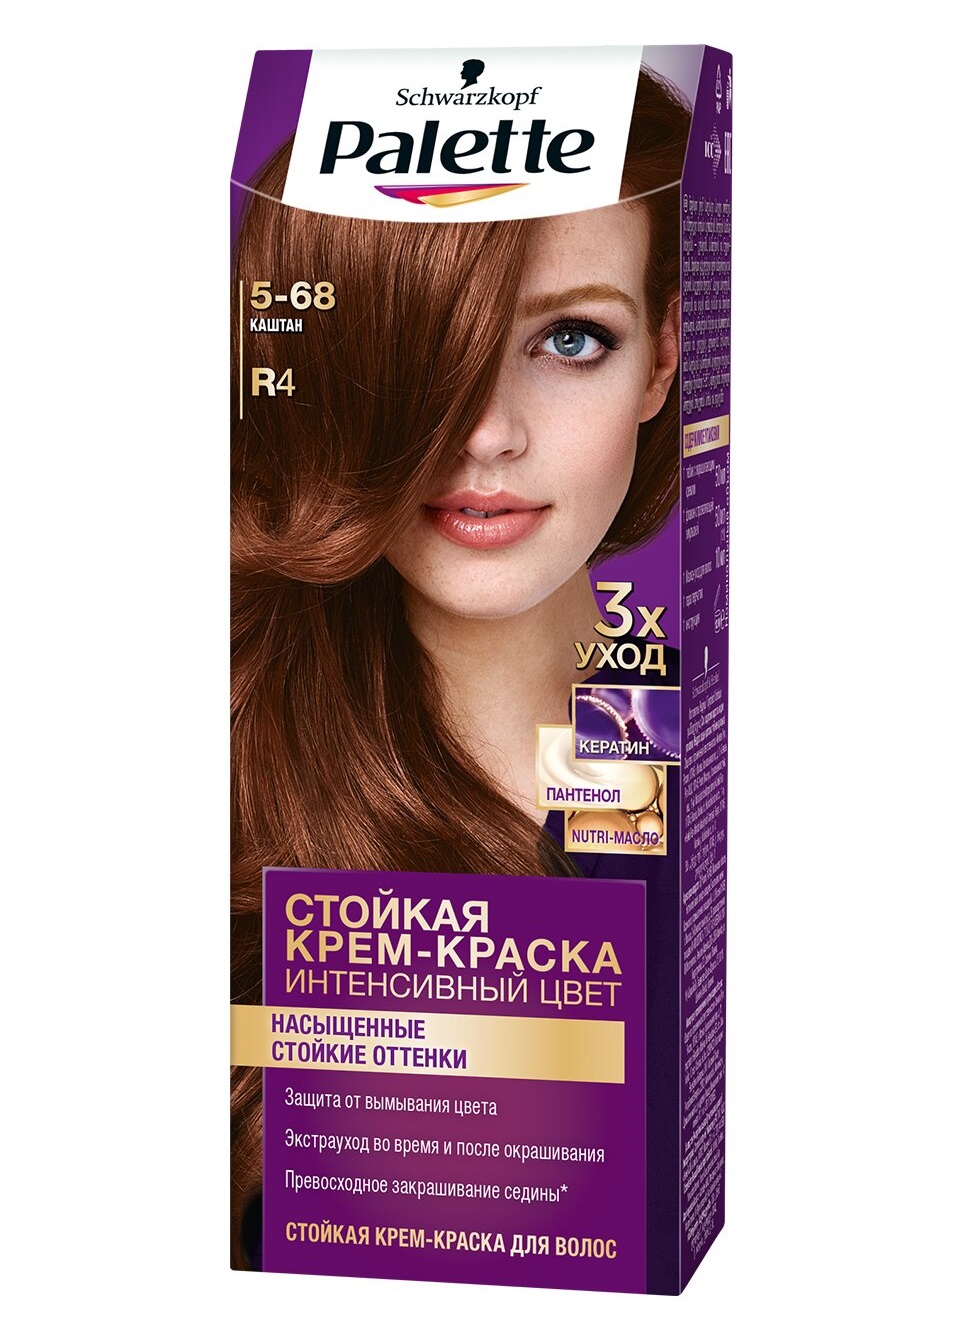 Крем-краска для волос Palette Интенсивный цвет 5-68 R4 Каштан 110 мл point краска для волос тон 1 77 чёрно коричневый интенсивный оксид 6%